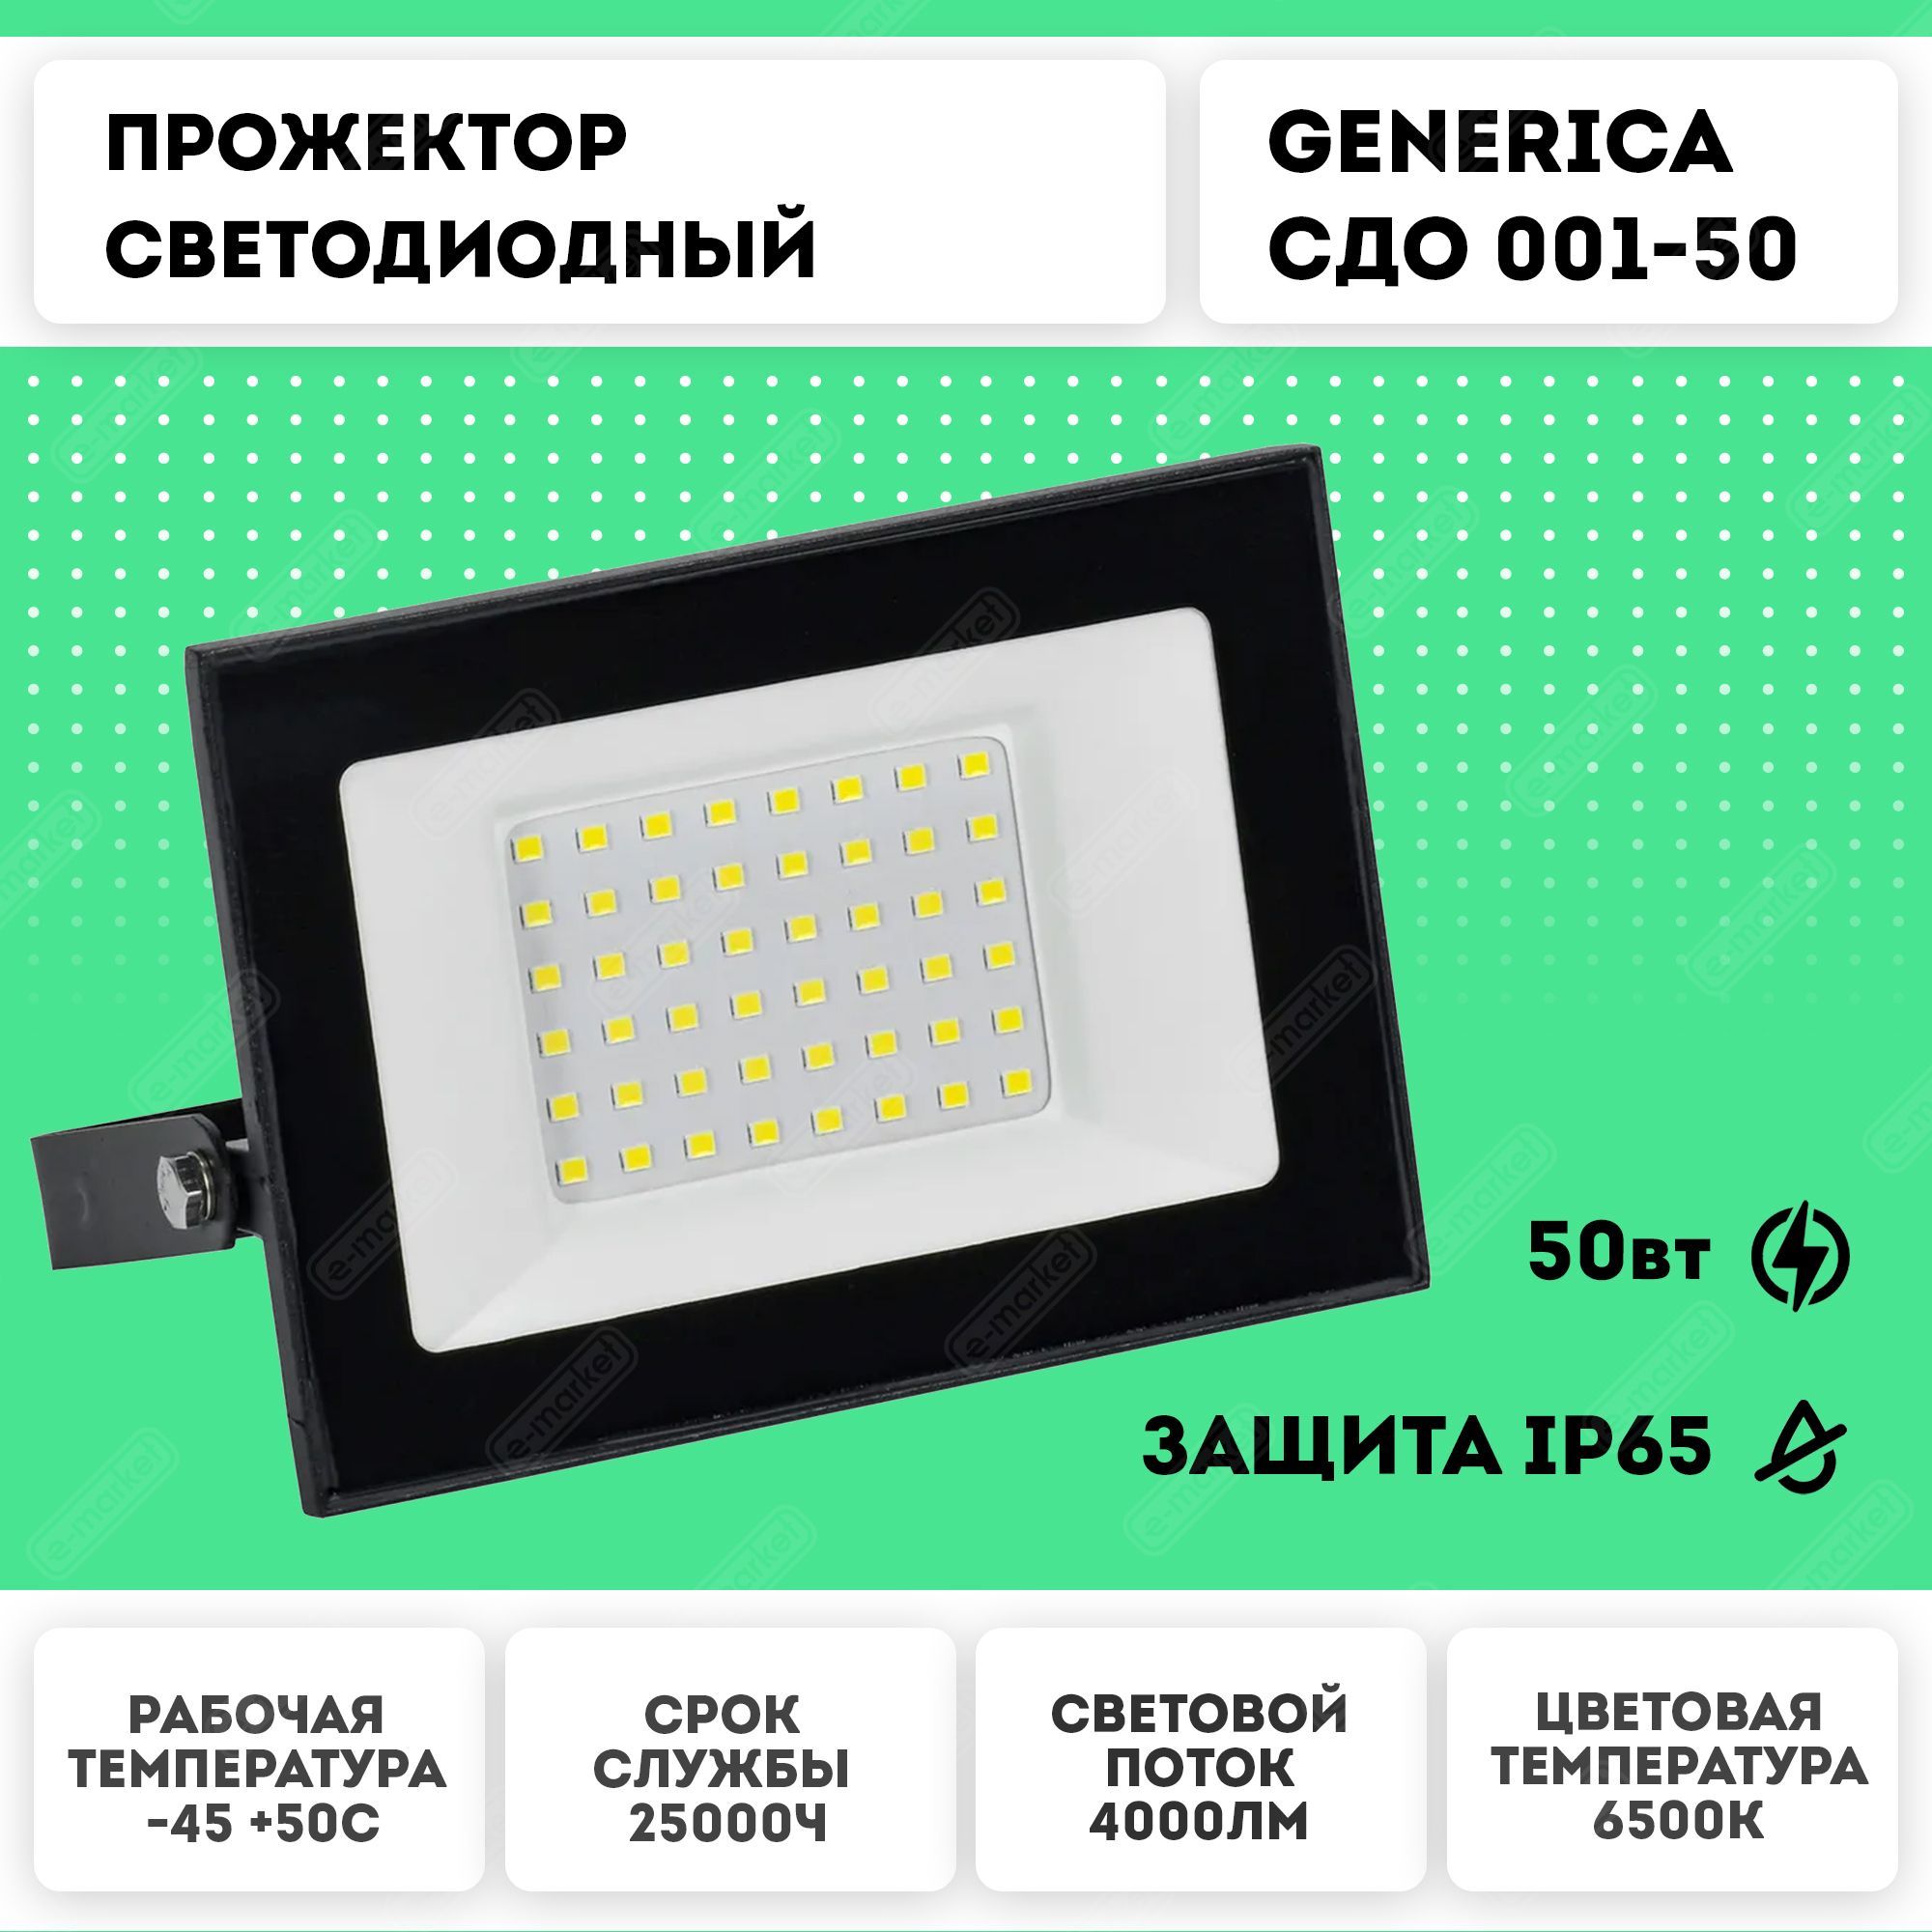 Прожектор 4000лм. Generica 100 Вт прожектор 6500к черный СДО 001-100.